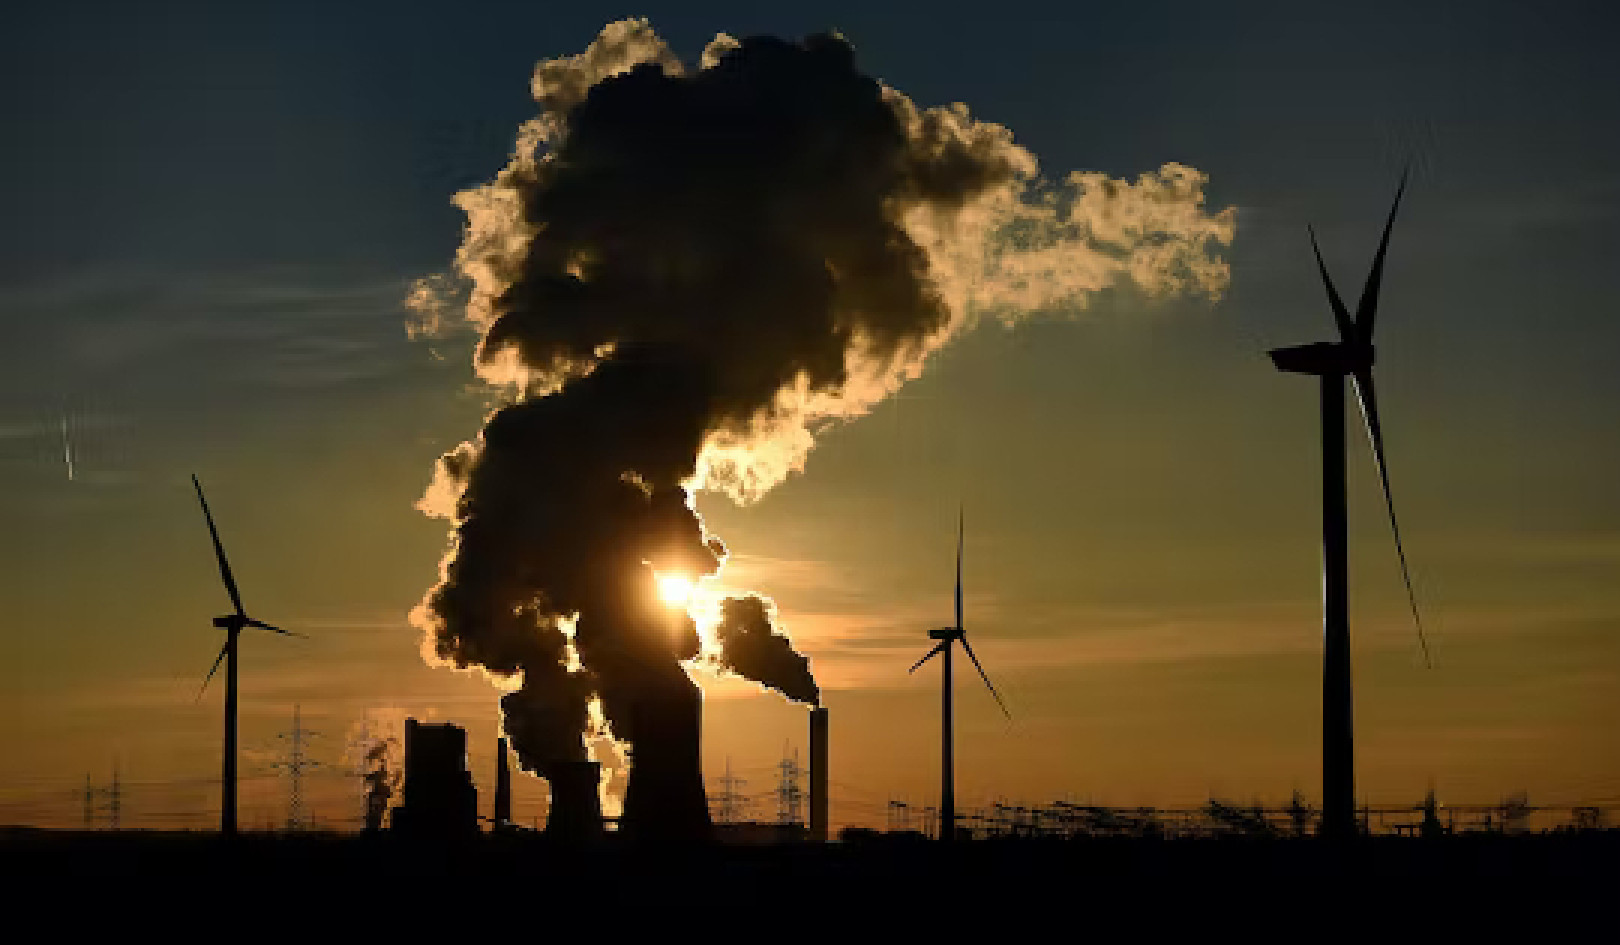 Hogyan képzelik el az energiavezetők az éghajlatváltozás elleni küzdelmet a jövőben